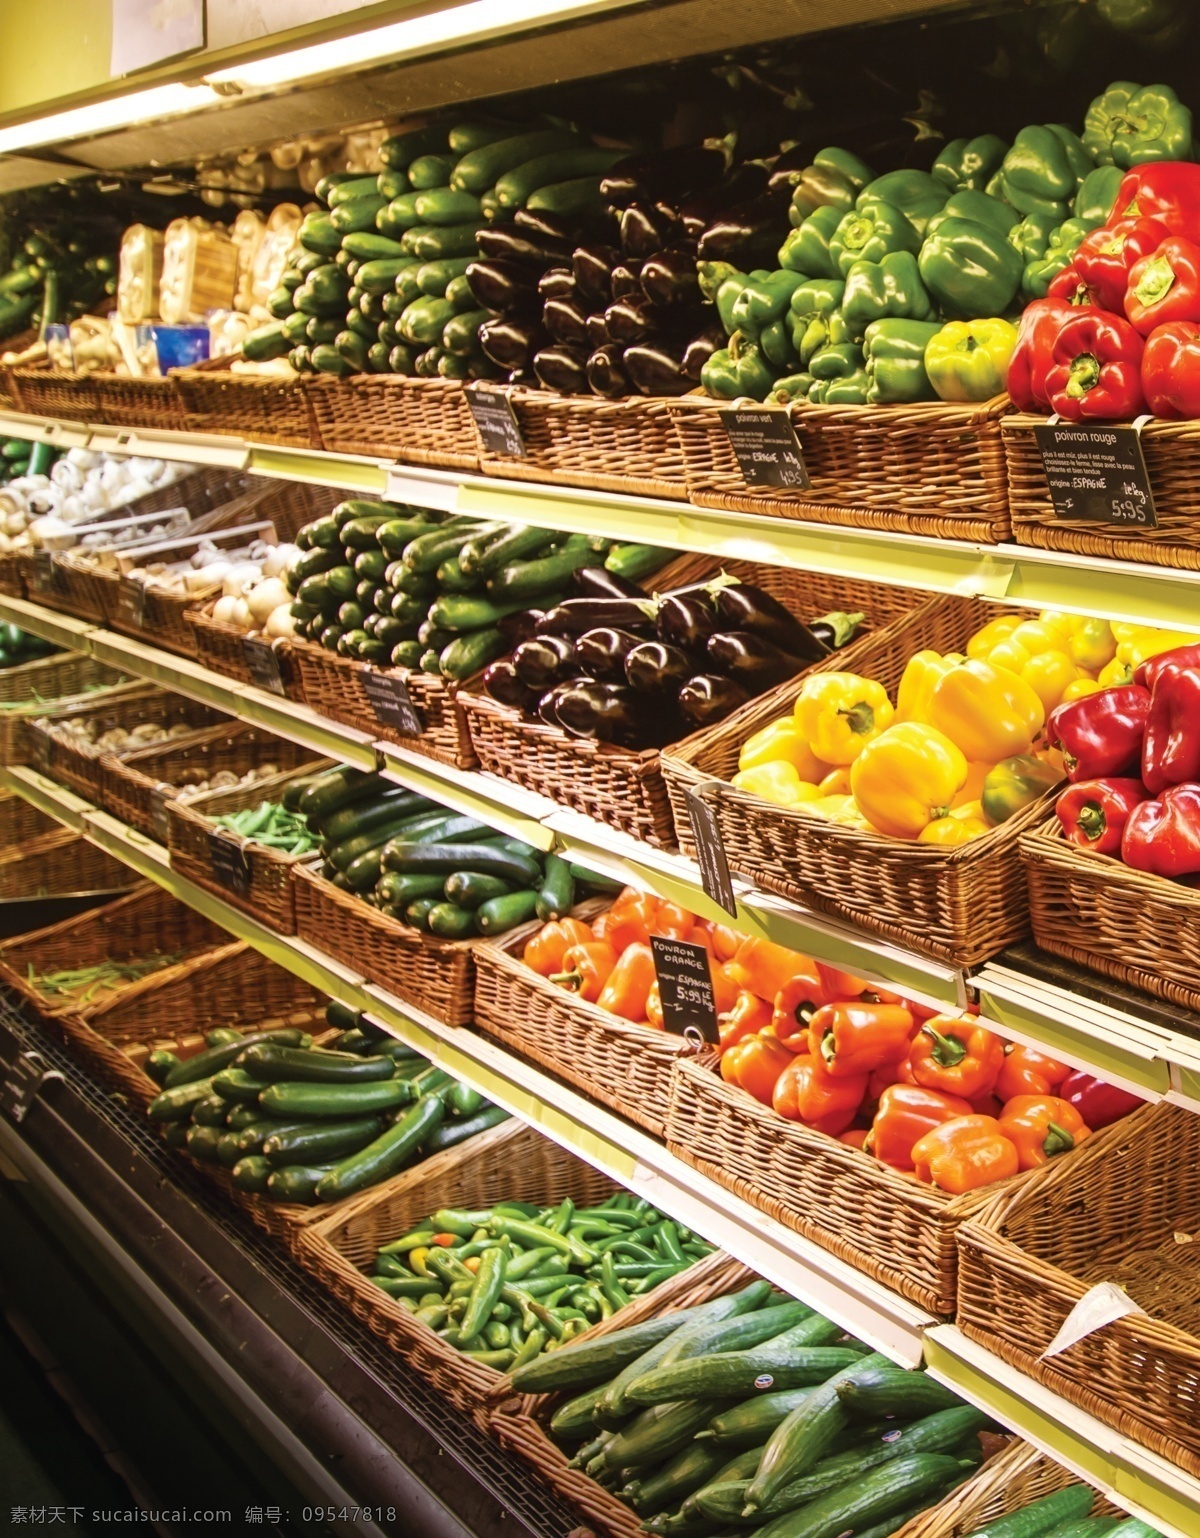 超市果蔬区 超市冷柜 超市摆设 超市商品 超市陈列 超市内景 超市蔬菜 超市水果 超市生鲜 特氟龙